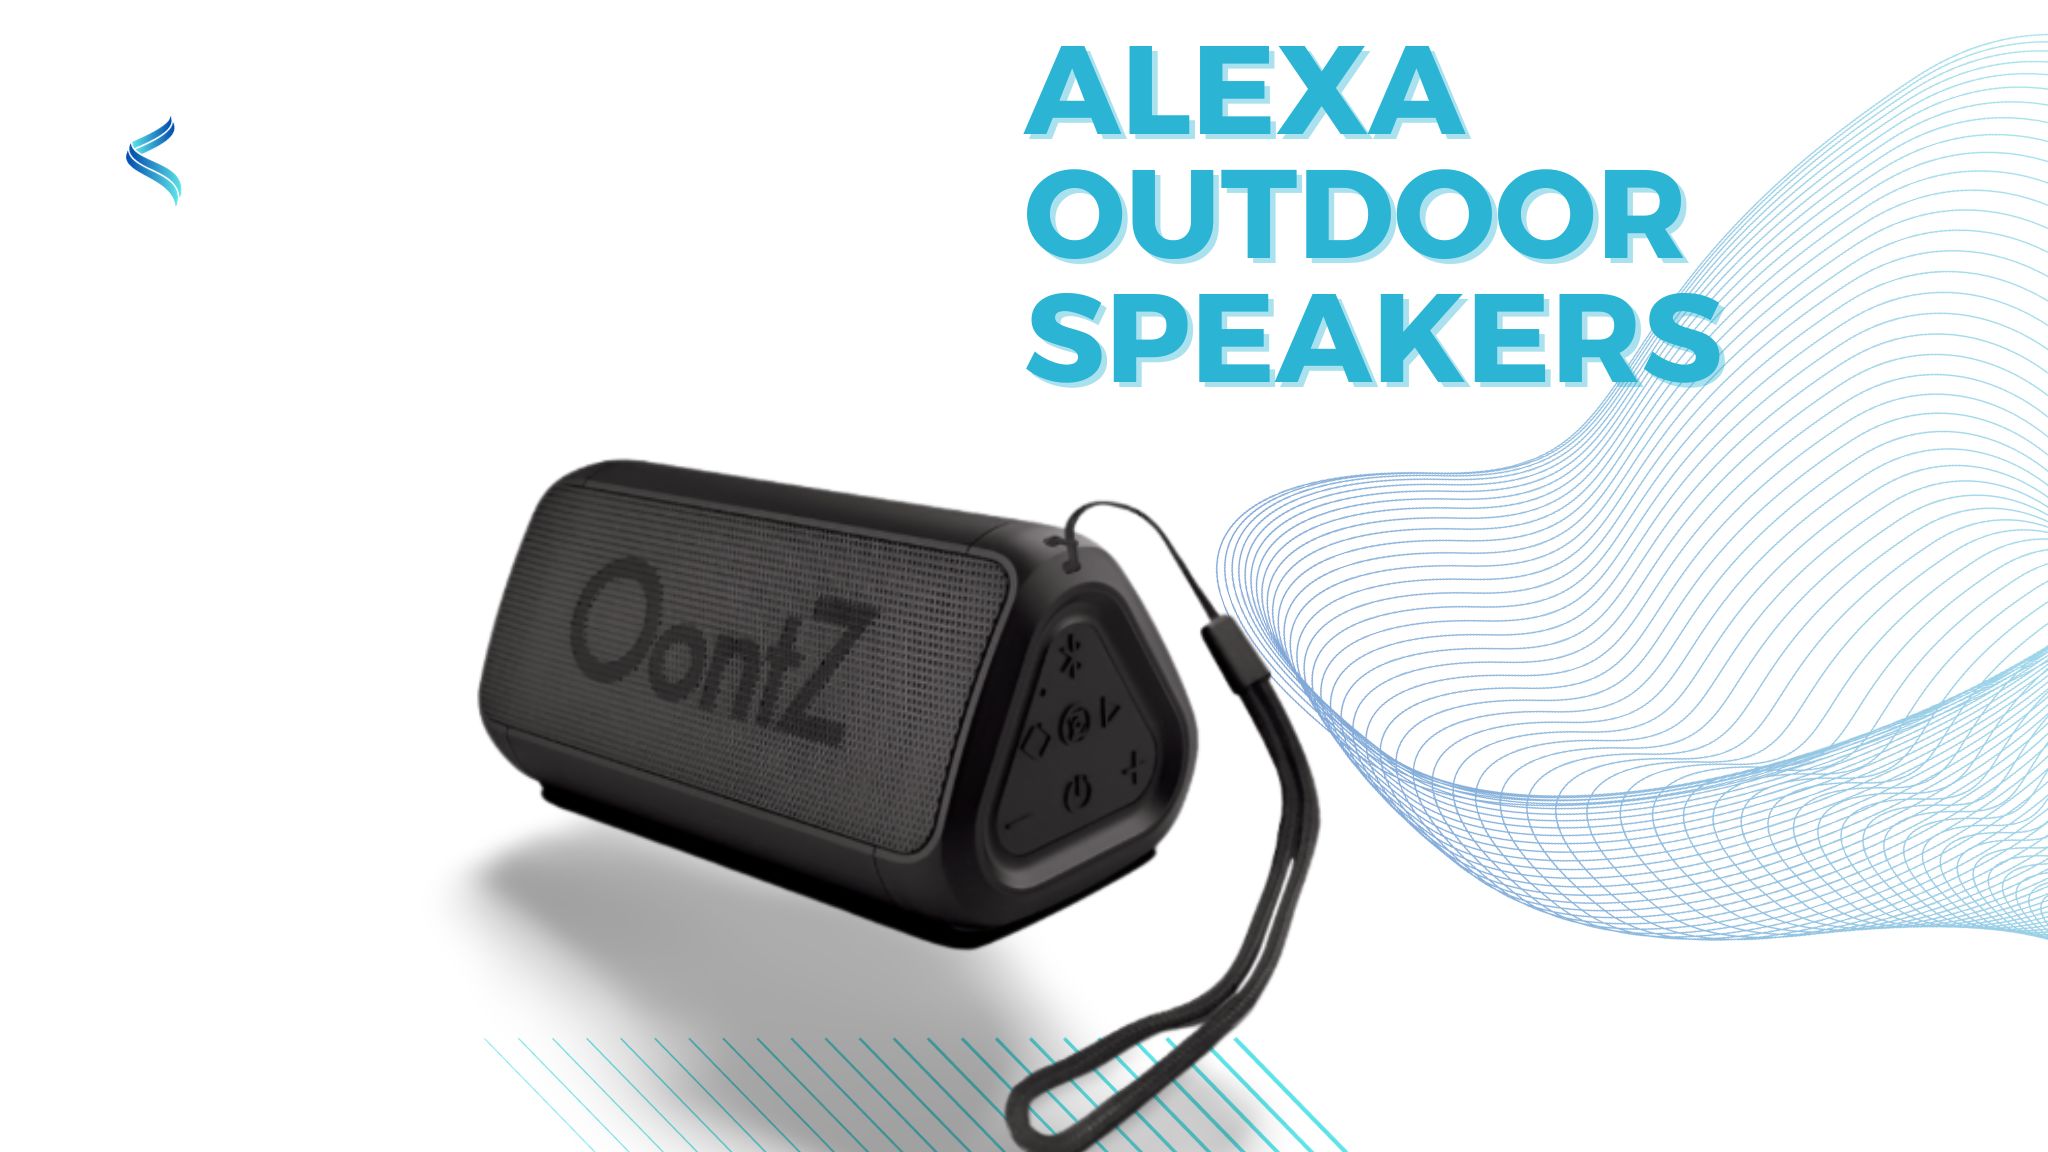 Outdoor Alexa speakers